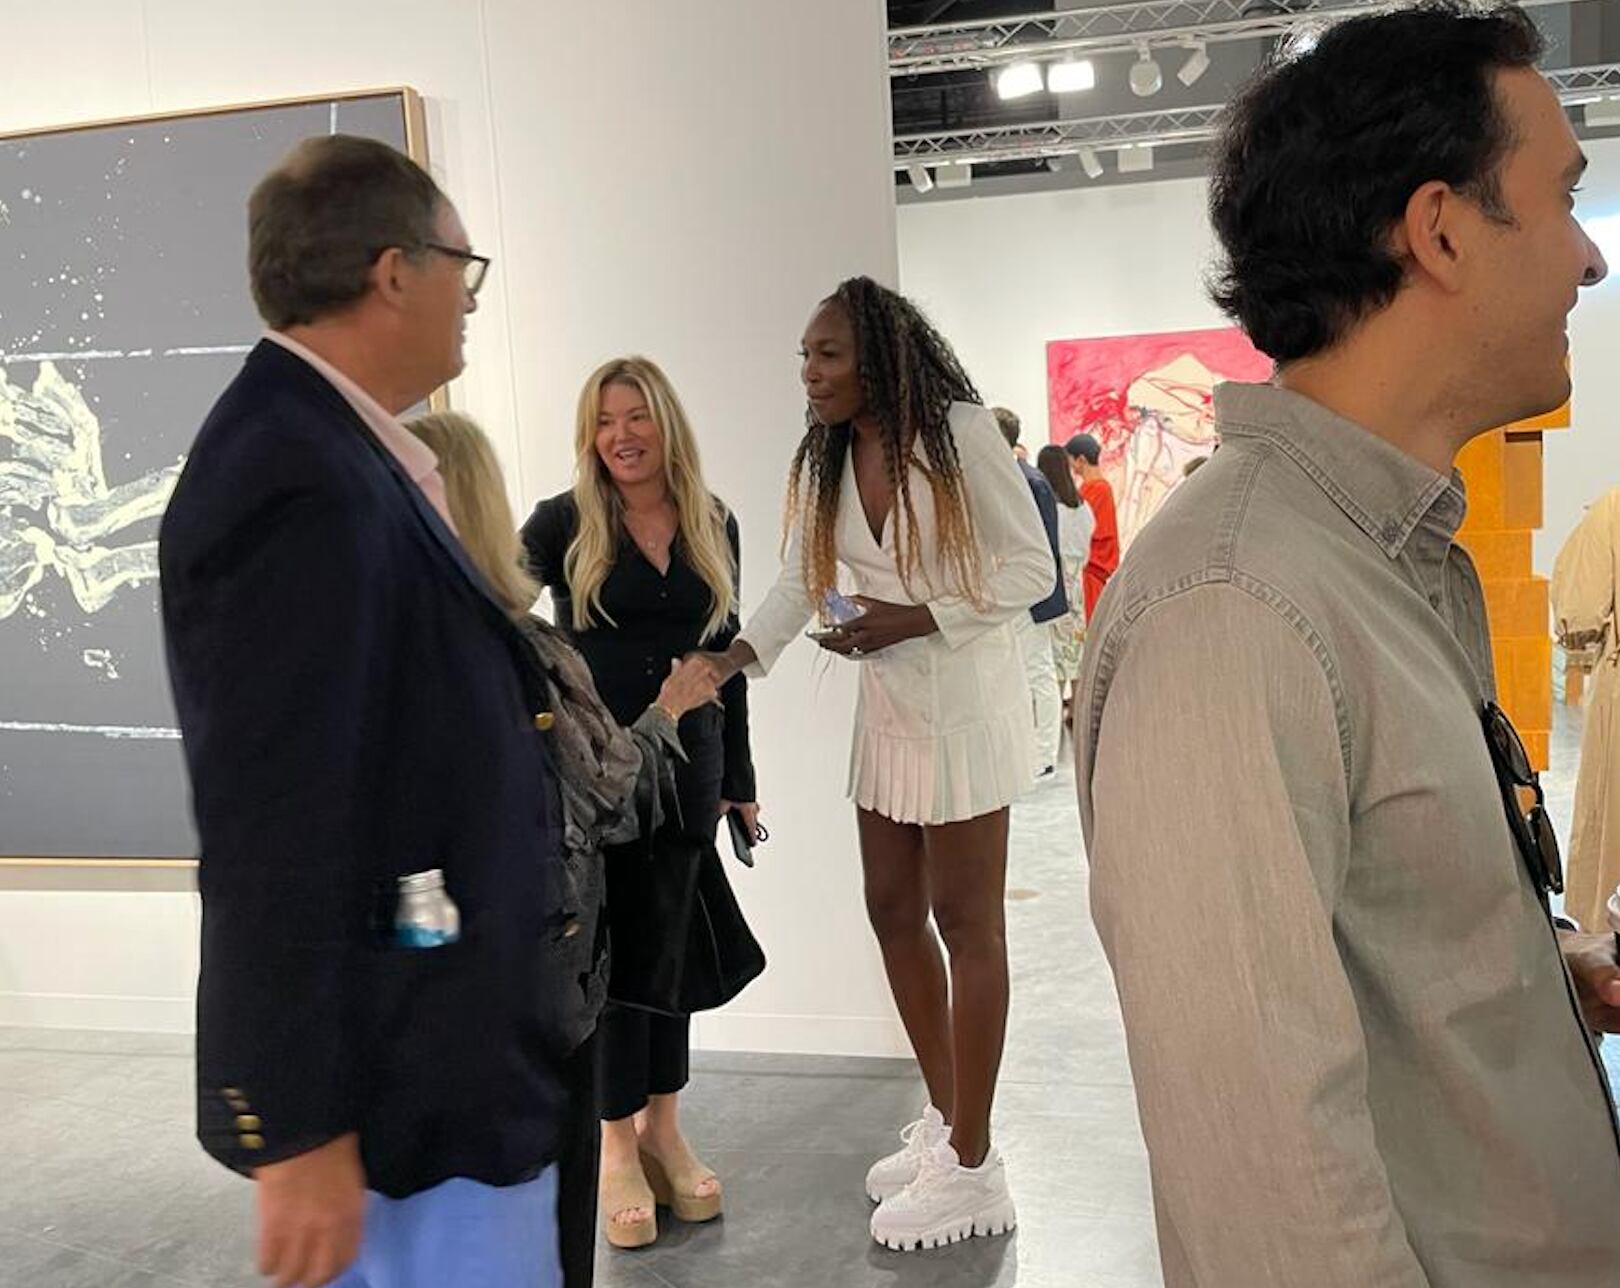 La tenista Venus Williams saluda a otro visitante de la preview de Art Basel Miami Beach